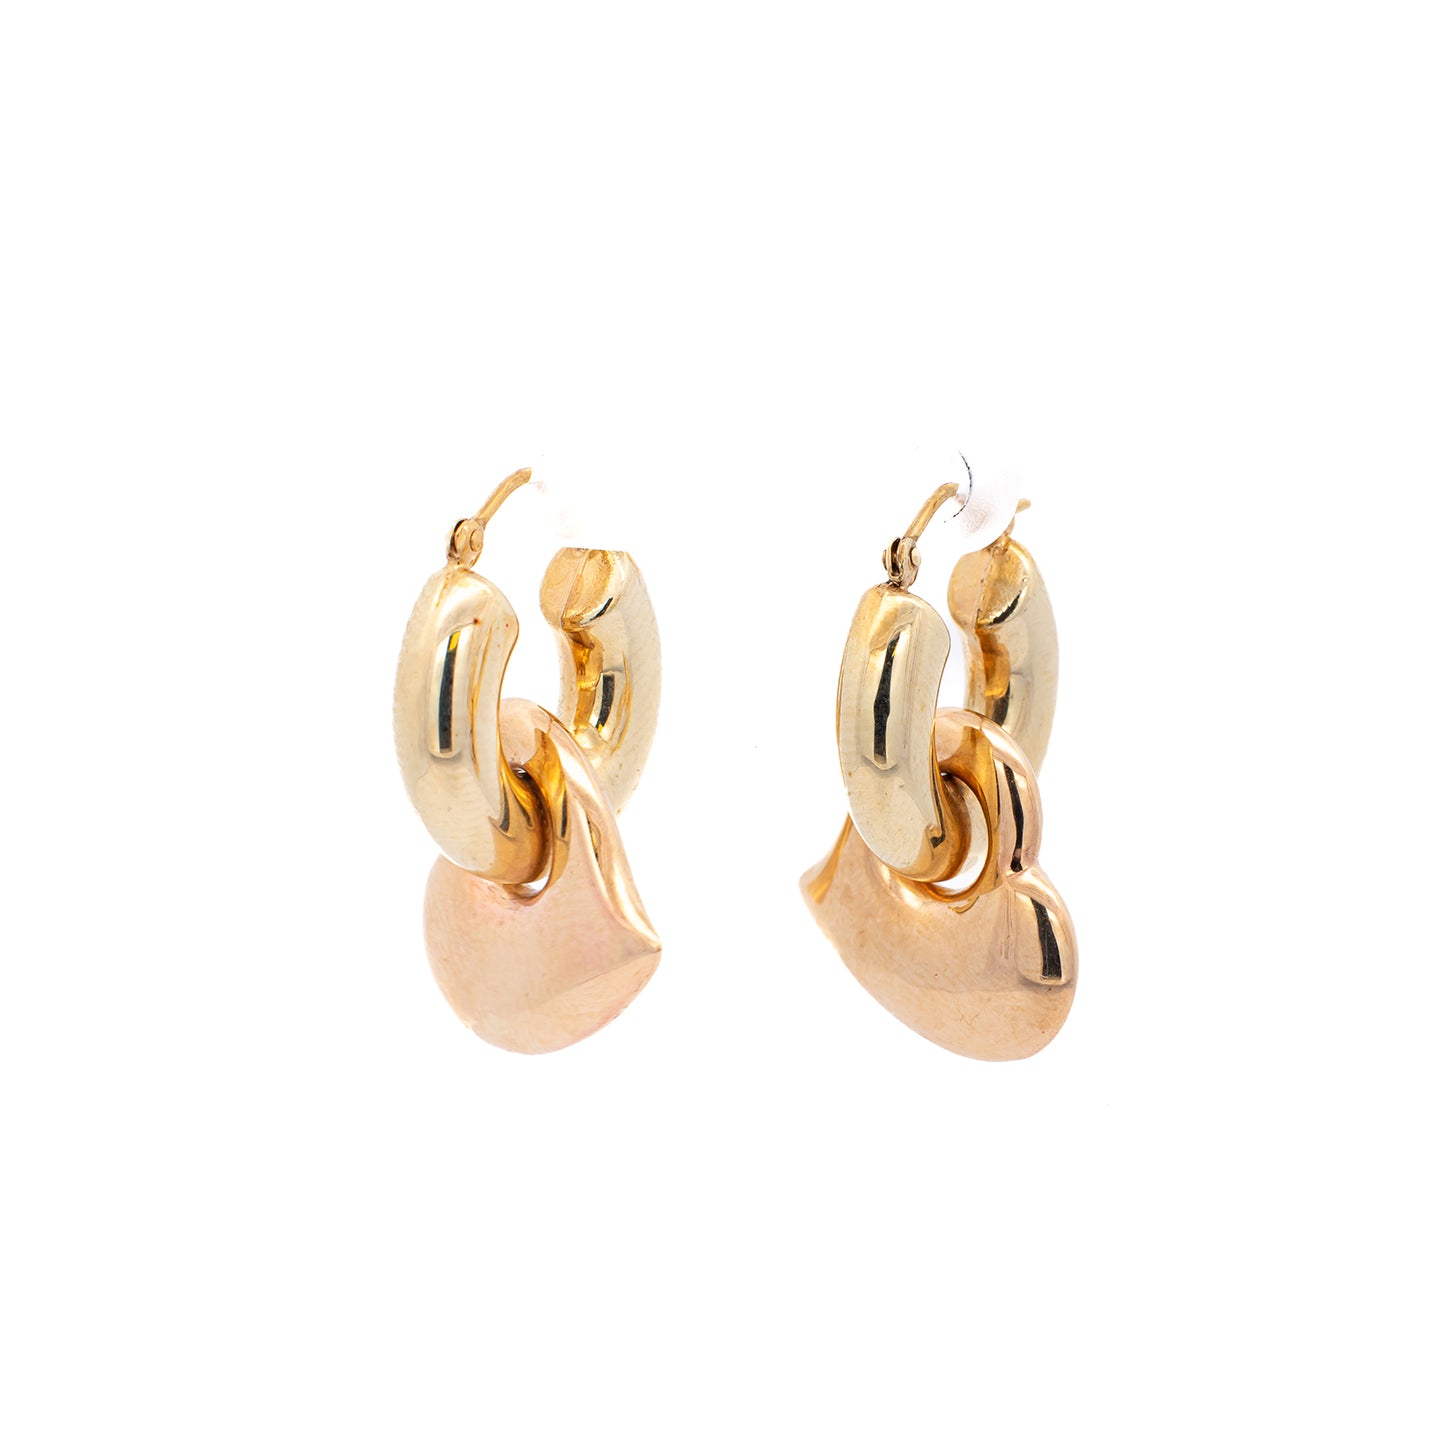 Heart earrings 2-piece plug vintage yellow gold 14K women's jewelry gold earrings